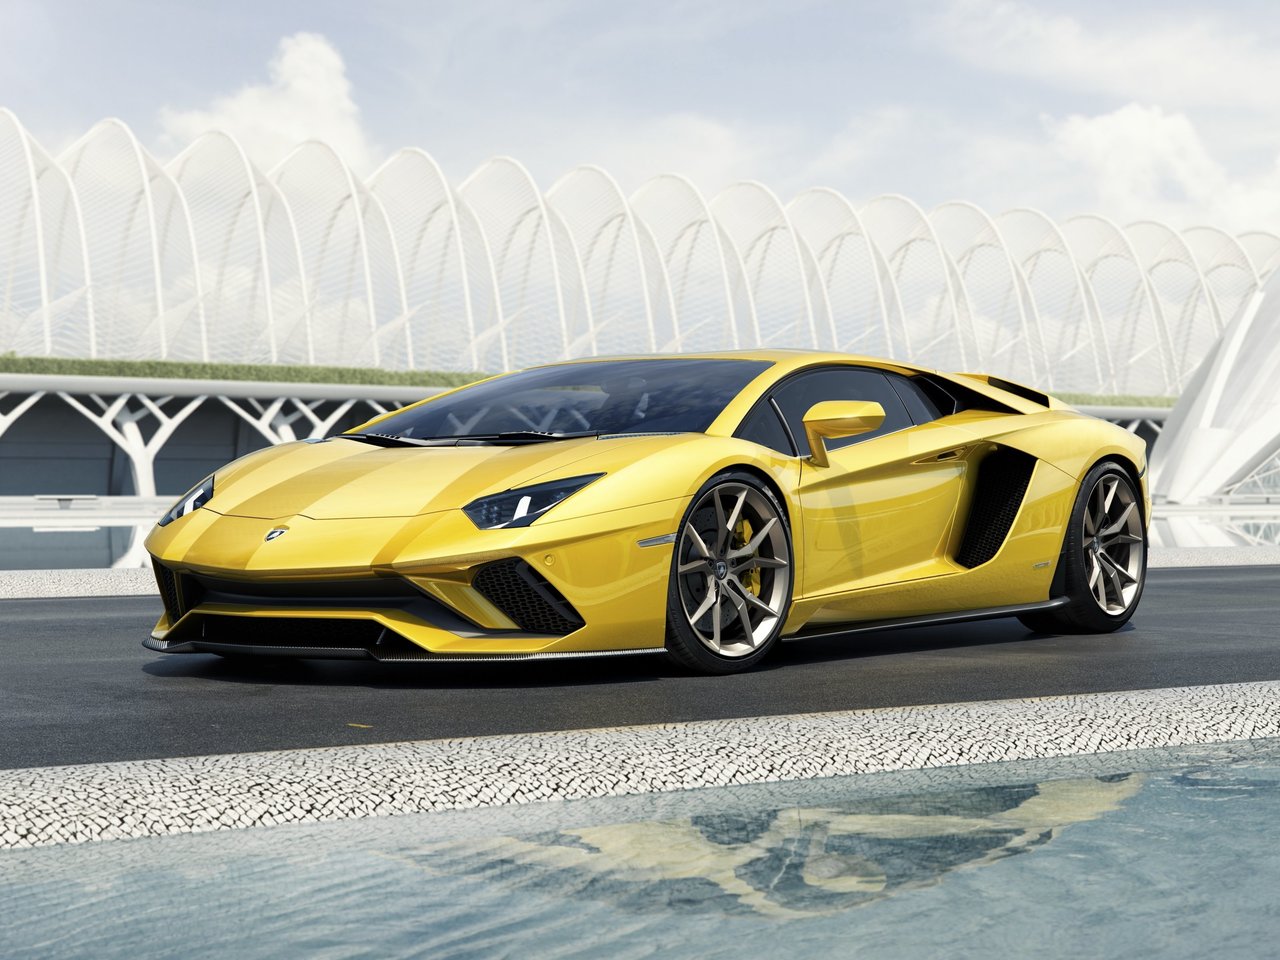 Расход газа одной комплектации купе Lamborghini Aventador. Разница стоимости заправки газом и бензином. Автономный пробег до и после установки ГБО.